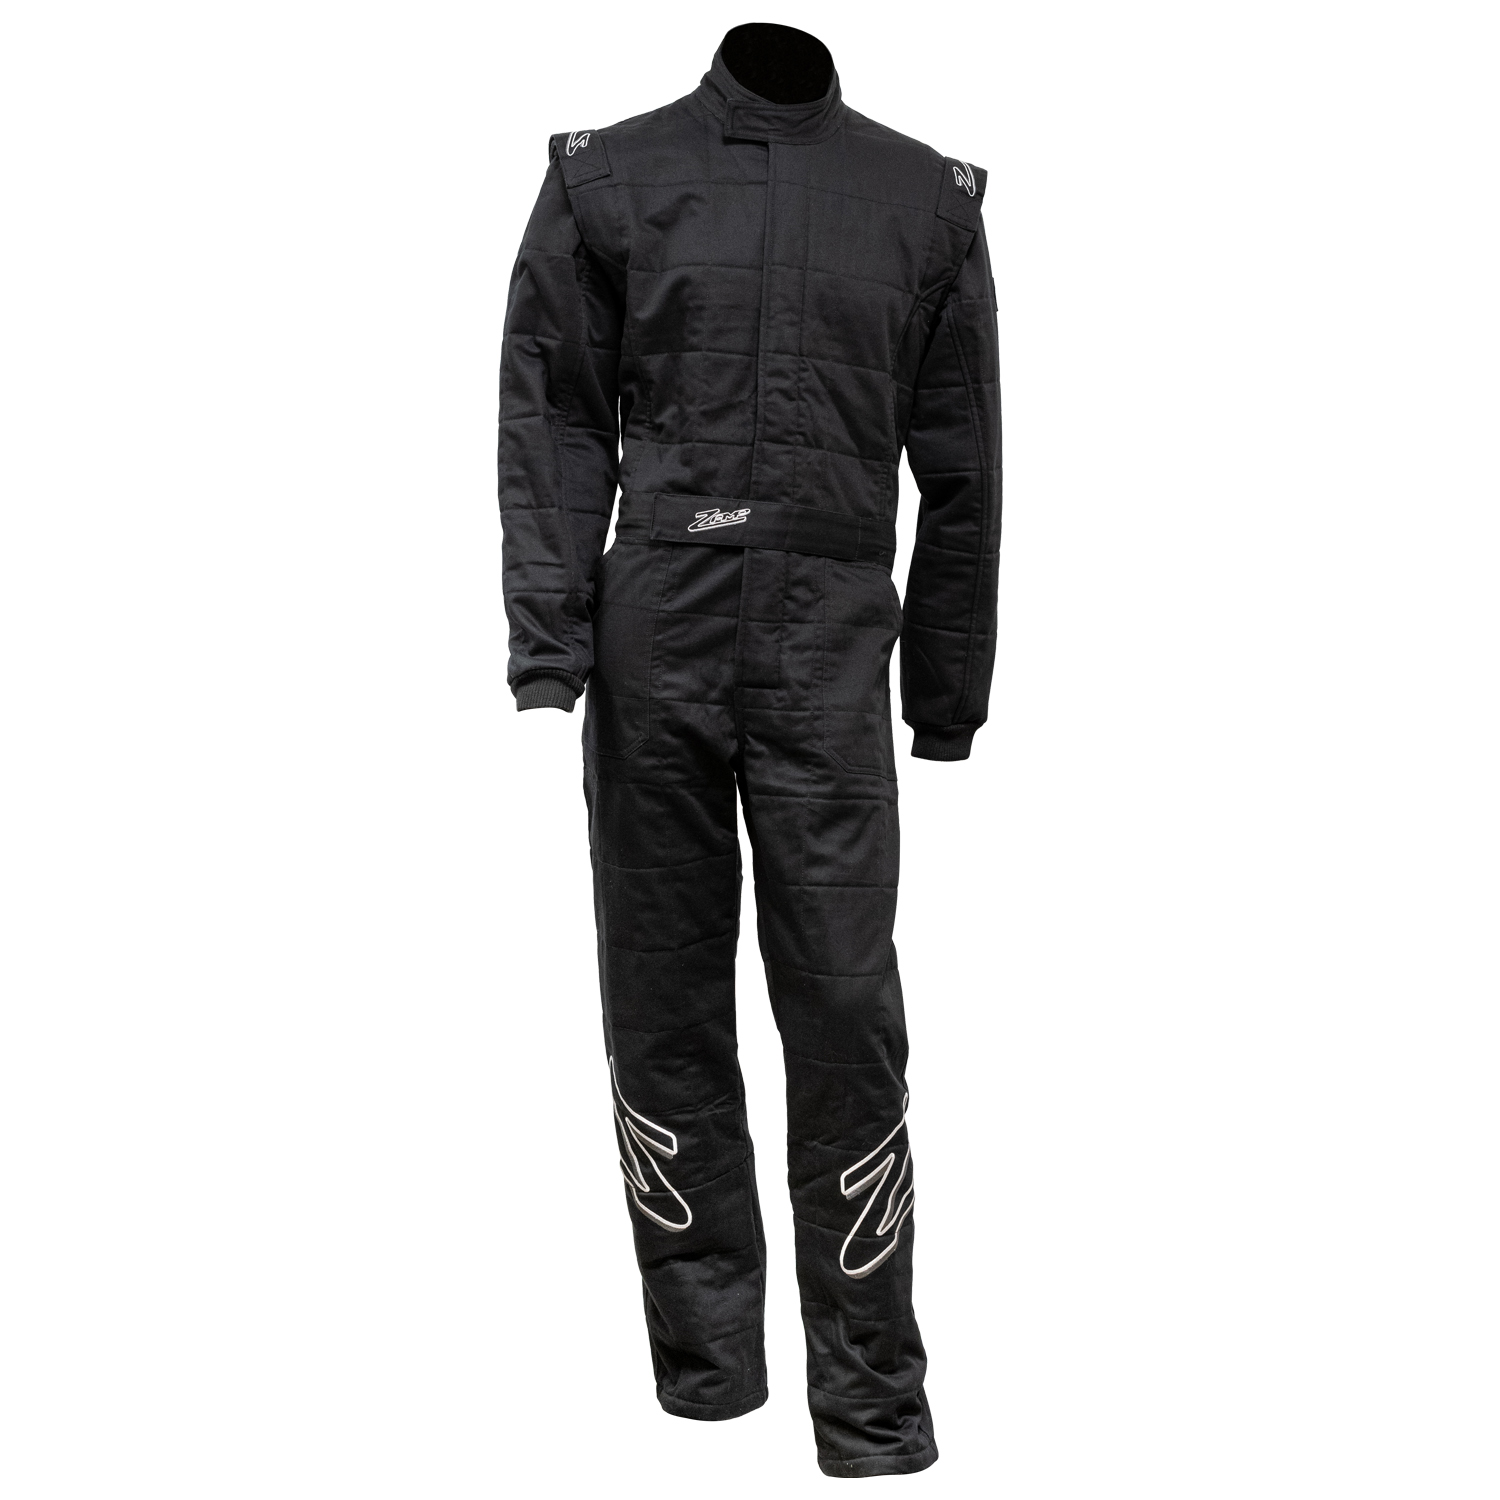 ZR-30 Suit Black